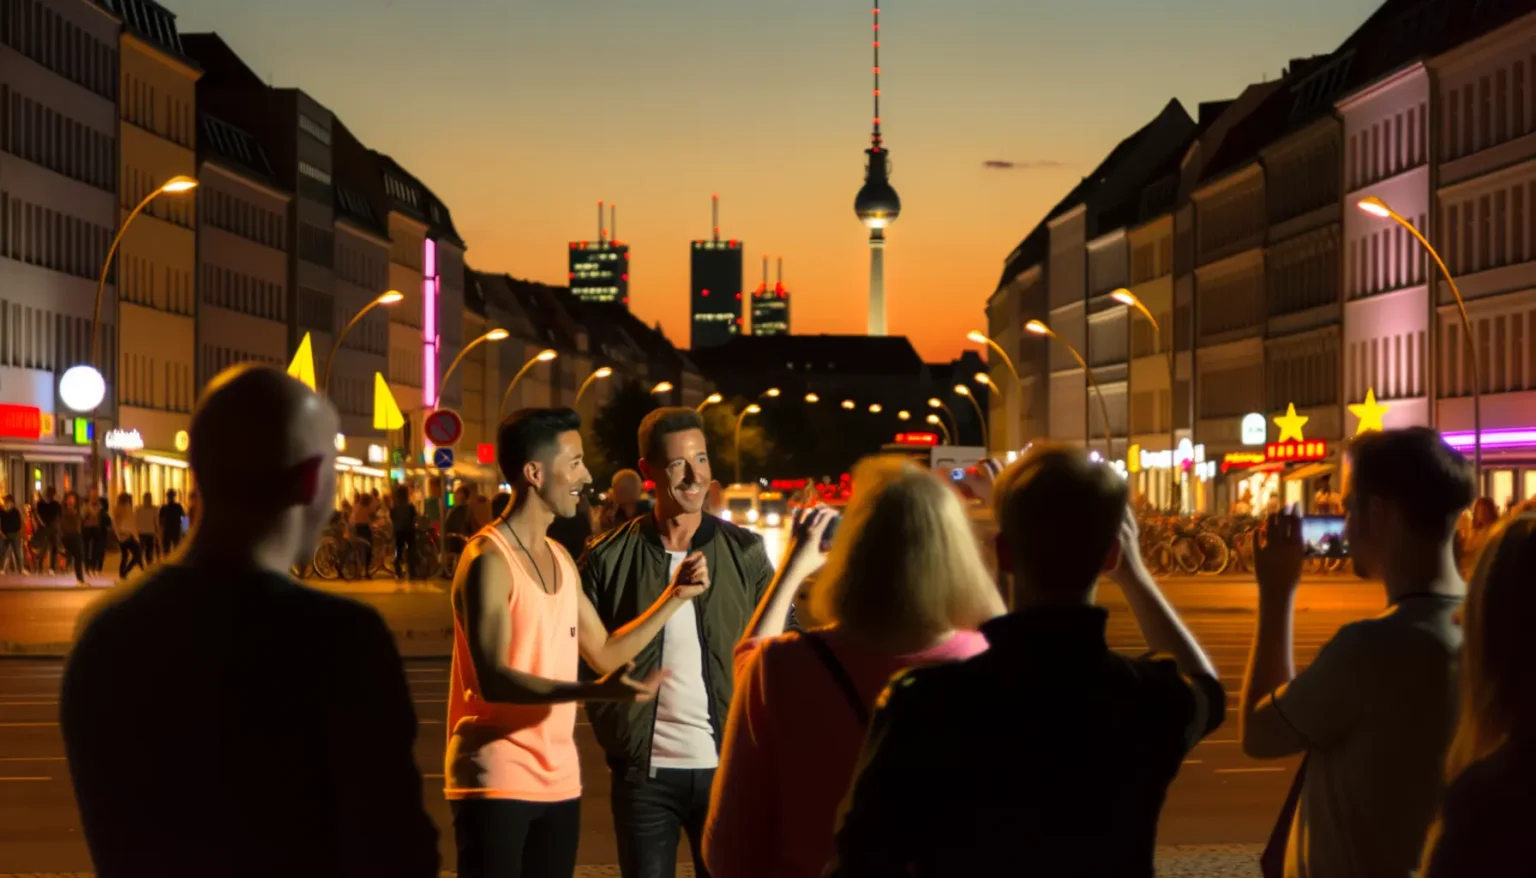 Belebte Stadtstraße bei Nacht mit dem Fernsehturm im Hintergrund. Zwei lächelnde Männer in der Mitte des Bildes machen ein Selfie, während andere Passanten um sie herum gehen oder ihr eigenes Foto machen. Der Himmel ist orange und blau während der Dämmerung und die Stadtlichter sind eingeschaltet.